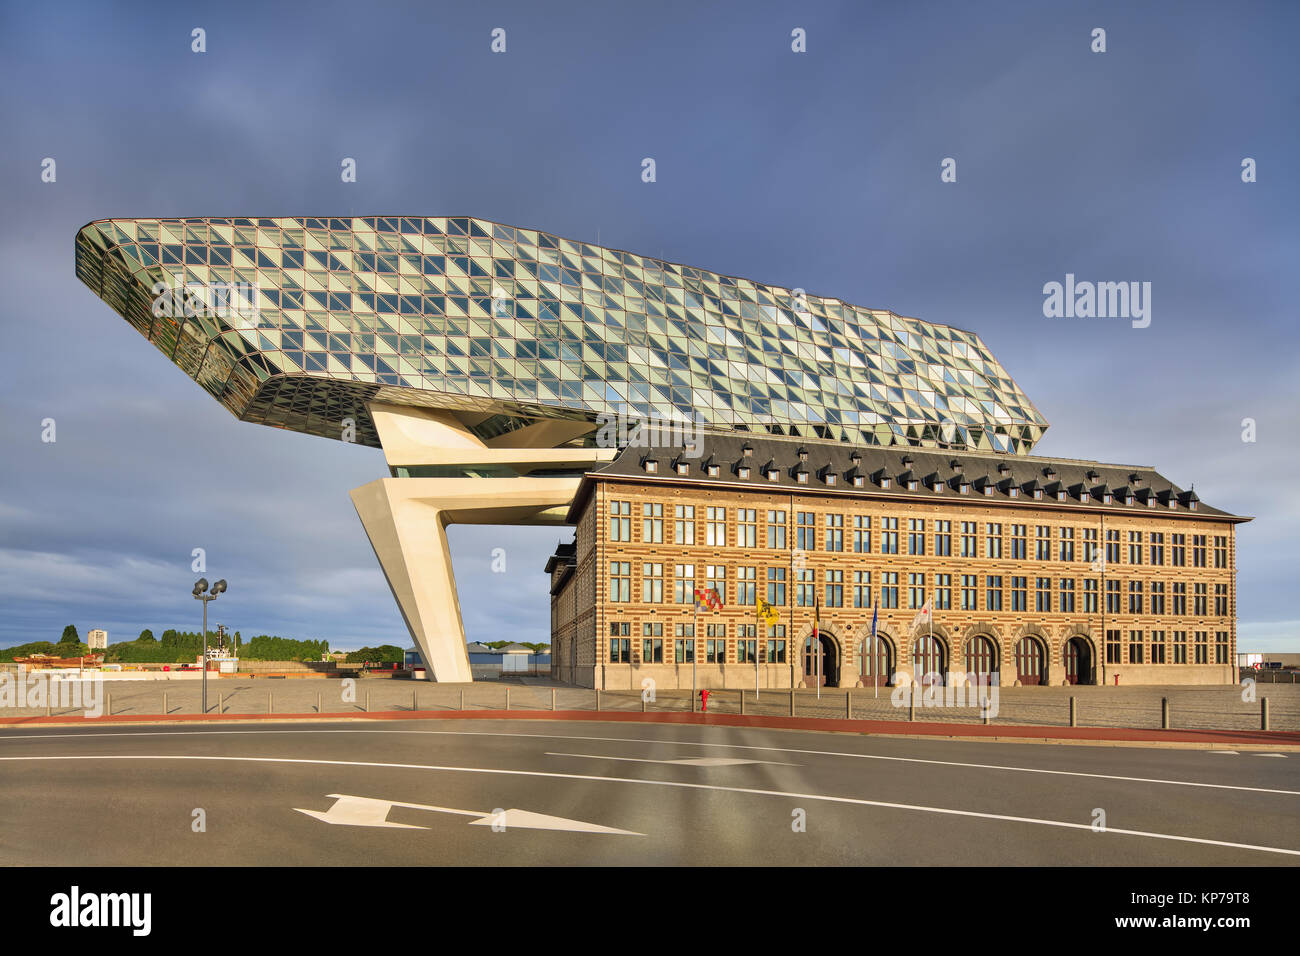 L'iconico Zaha Hadid progettato porto di Anversa sede, una ristrutturazione di un ex stazione dei vigili del fuoco con diamante a forma di scultura sulla parte superiore. Foto Stock